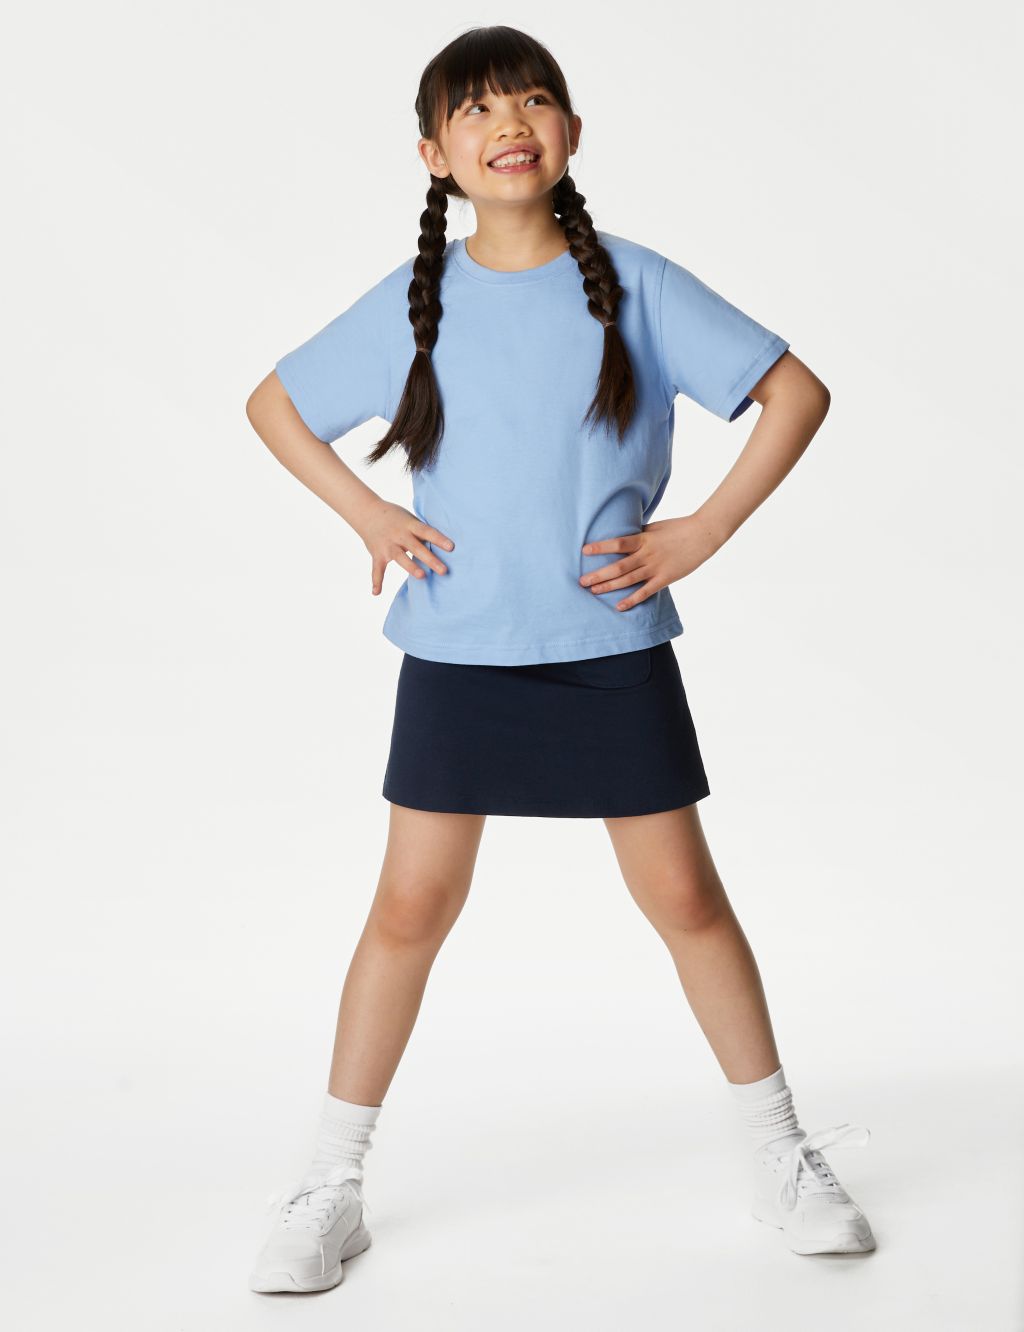 UndieShorts All in One Girls Under Shorts Navy Blue - 2 